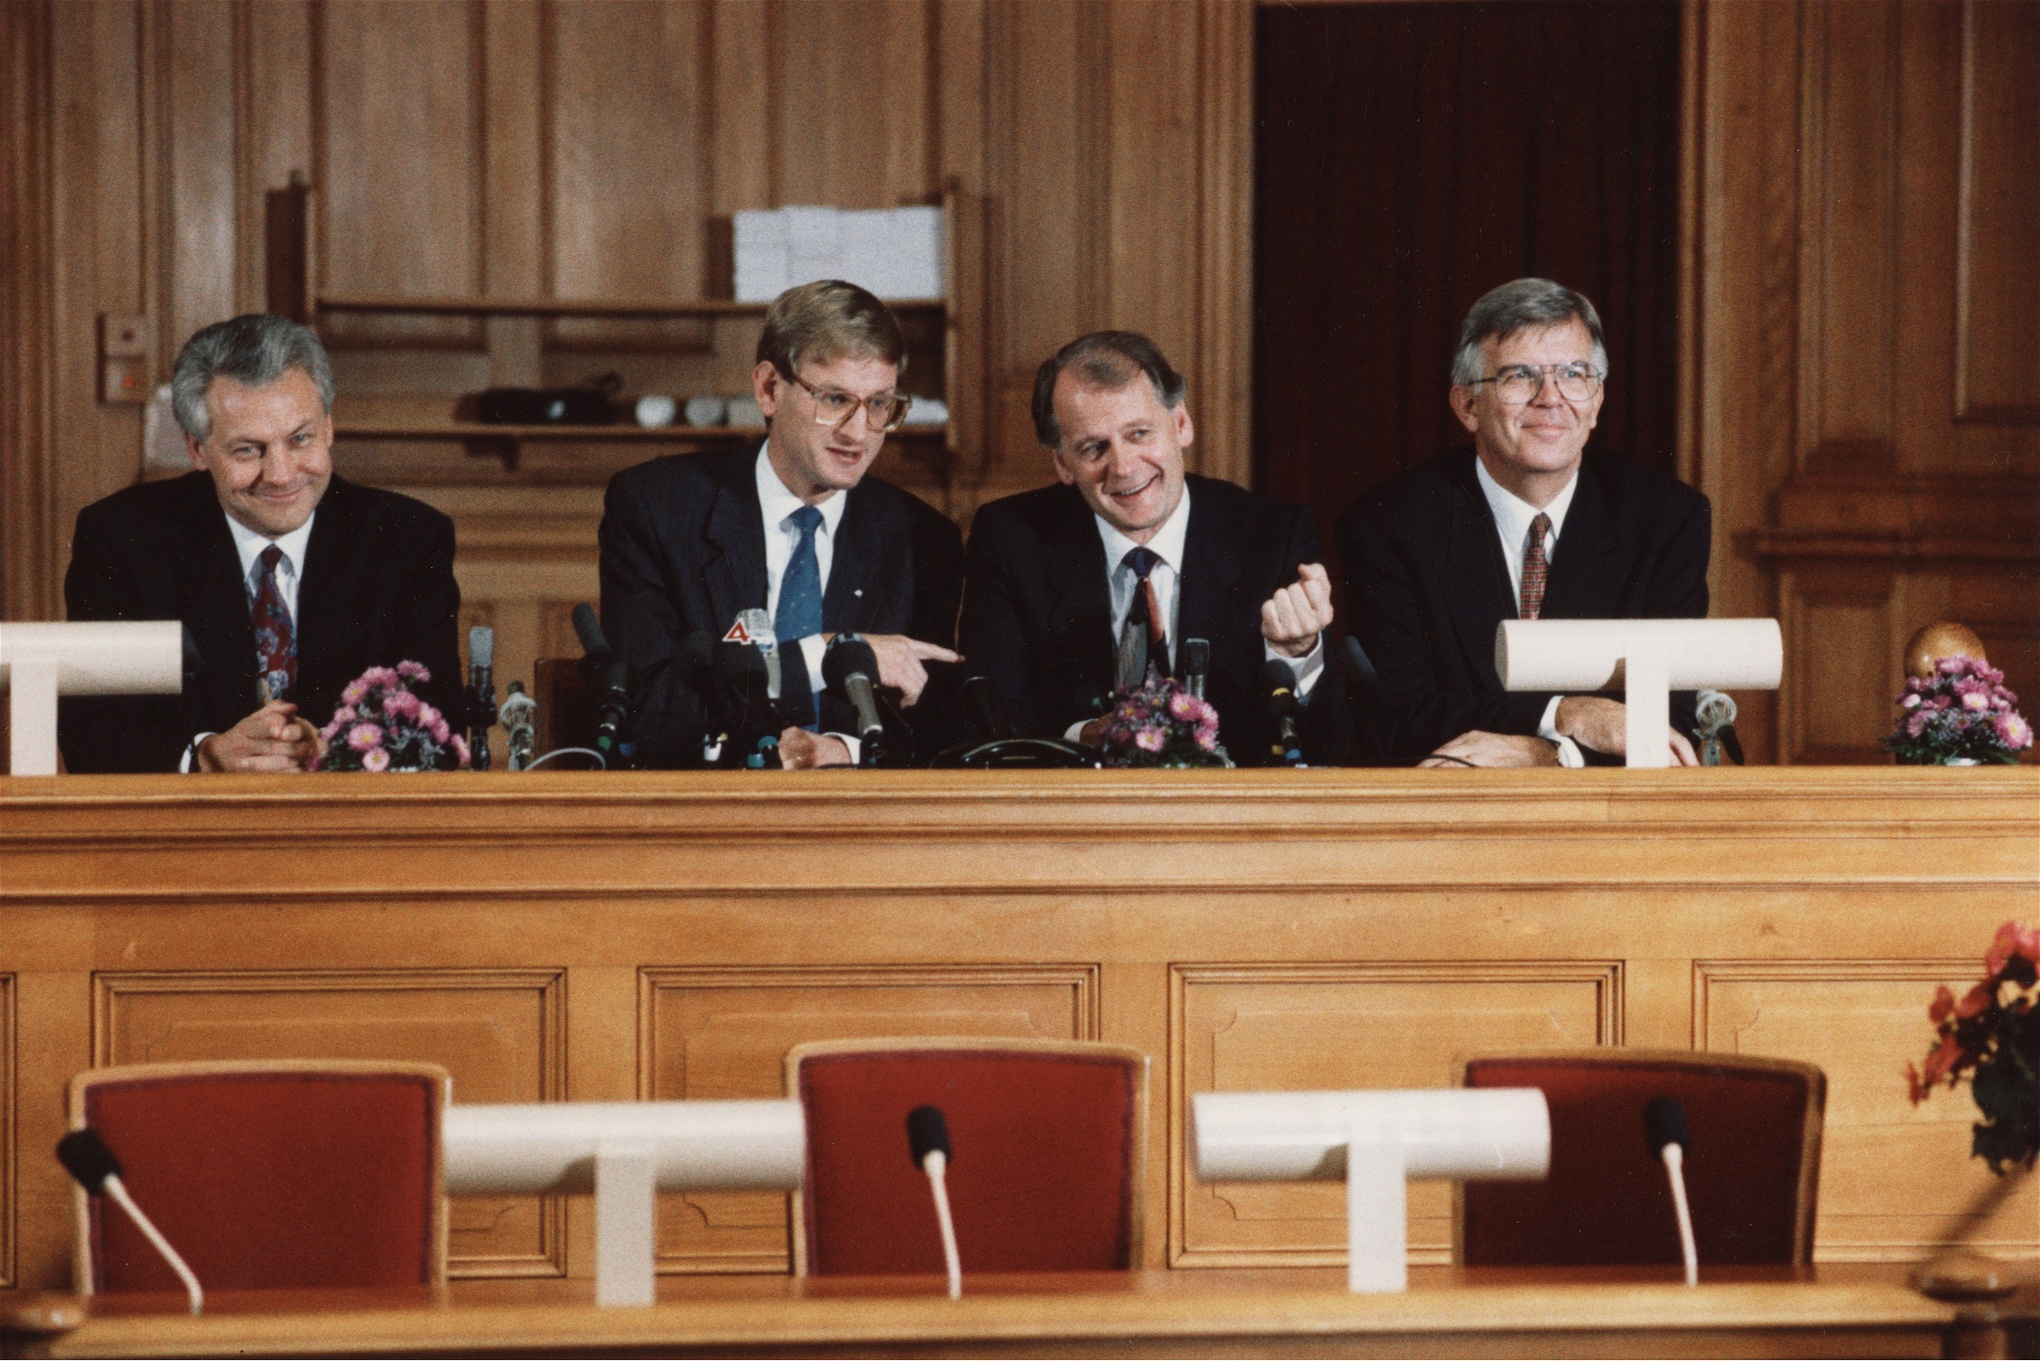 Den nytillträdda borgerliga regeringen Bildts första åtgärd 1991 var att avskaffa bostadsdepartementet – symbolen för den centraliserade bostadspolitiken.